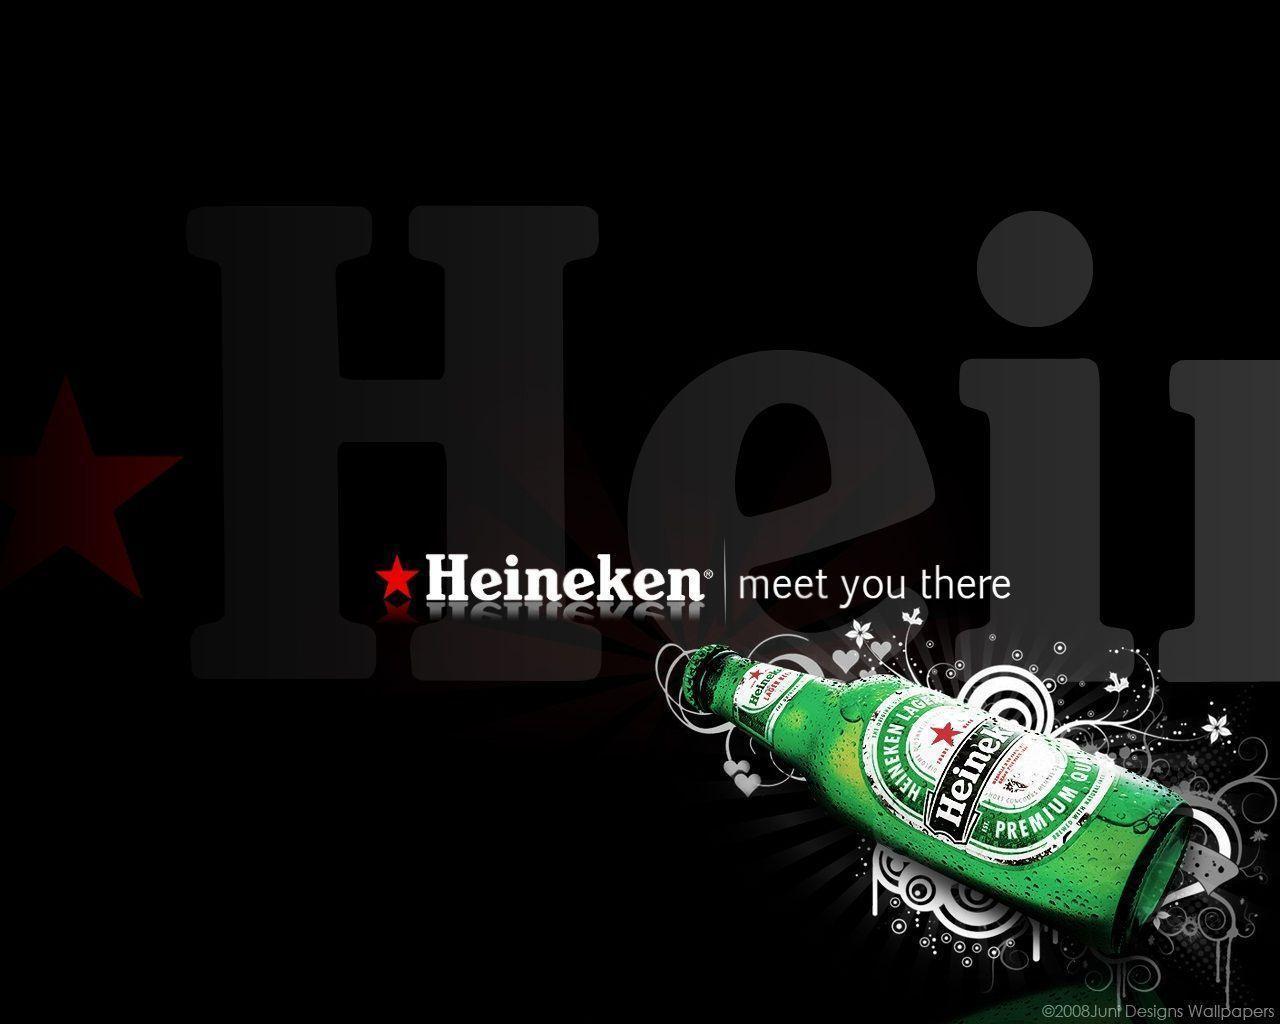 Heineken : Desktop and mobile wallpapers : Wallippo